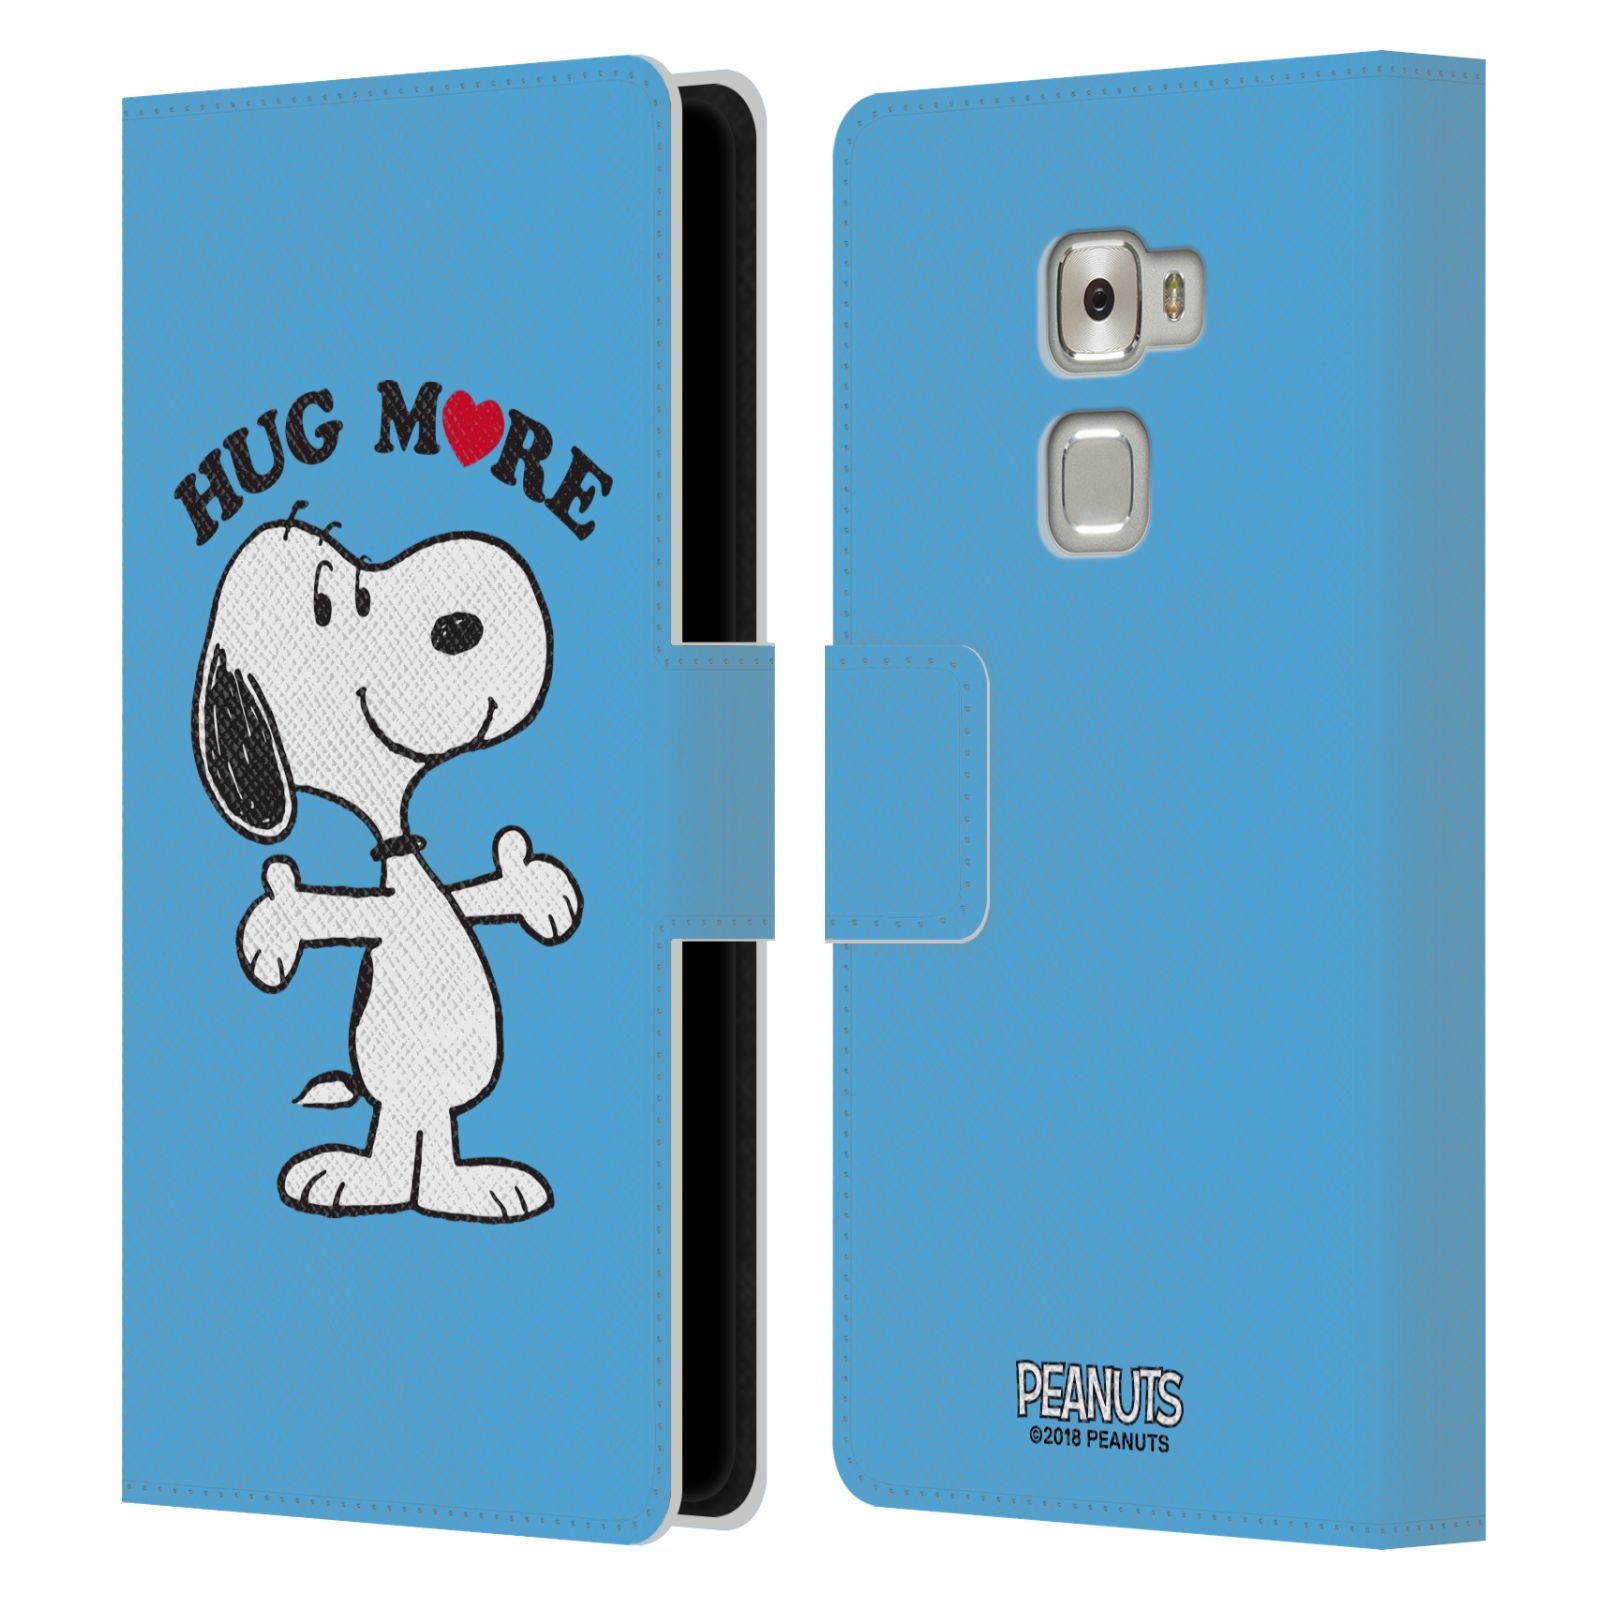 Pouzdro na mobil Huawei Mate S - Head Case - Peanuts - pejsek snoopy světle modré objetí